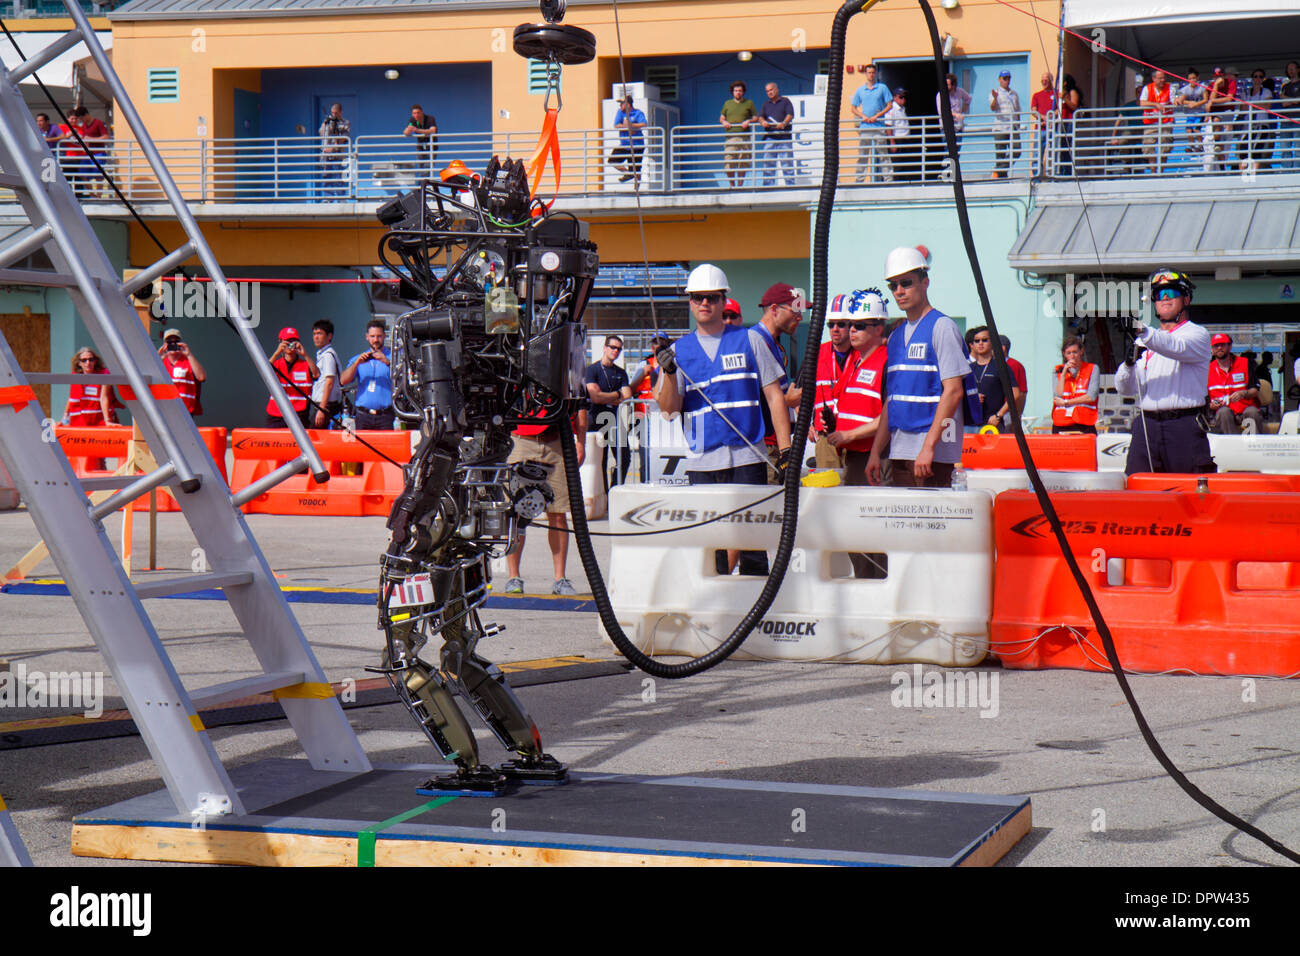 Miami Florida,Homestead,Speedway,DARPA Robotics Challenge Trials,Remote Controlled,robot,robots,homme hommes,étudiant étudiants ingénierie,escalade lad Banque D'Images